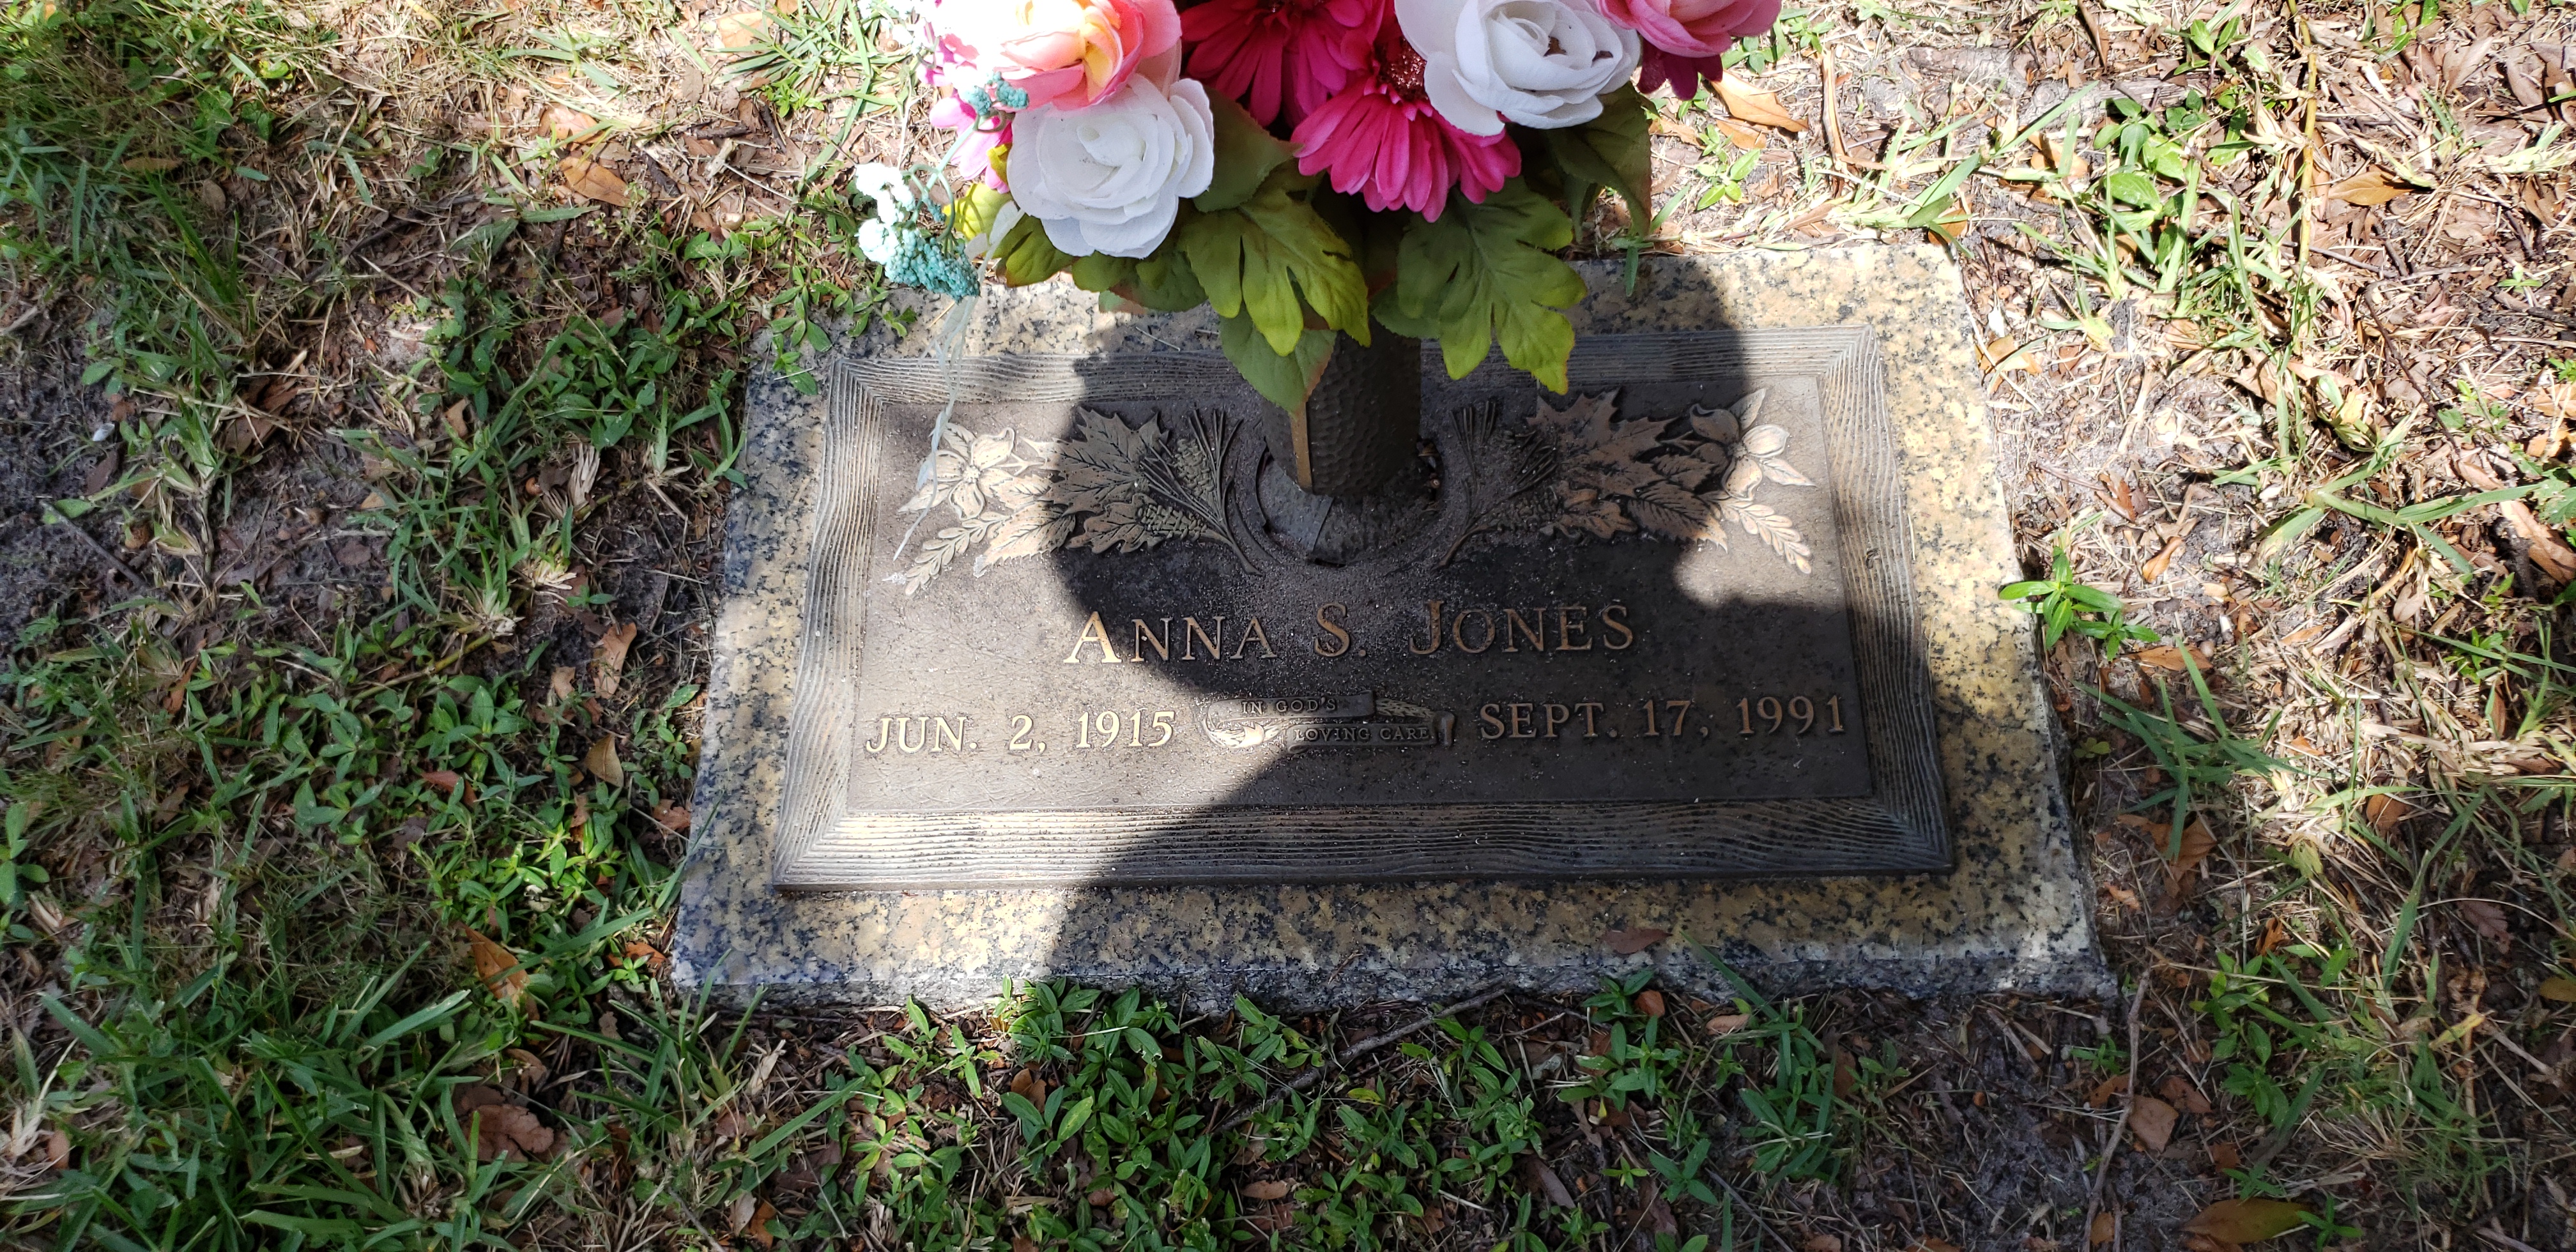 Anna S Jones